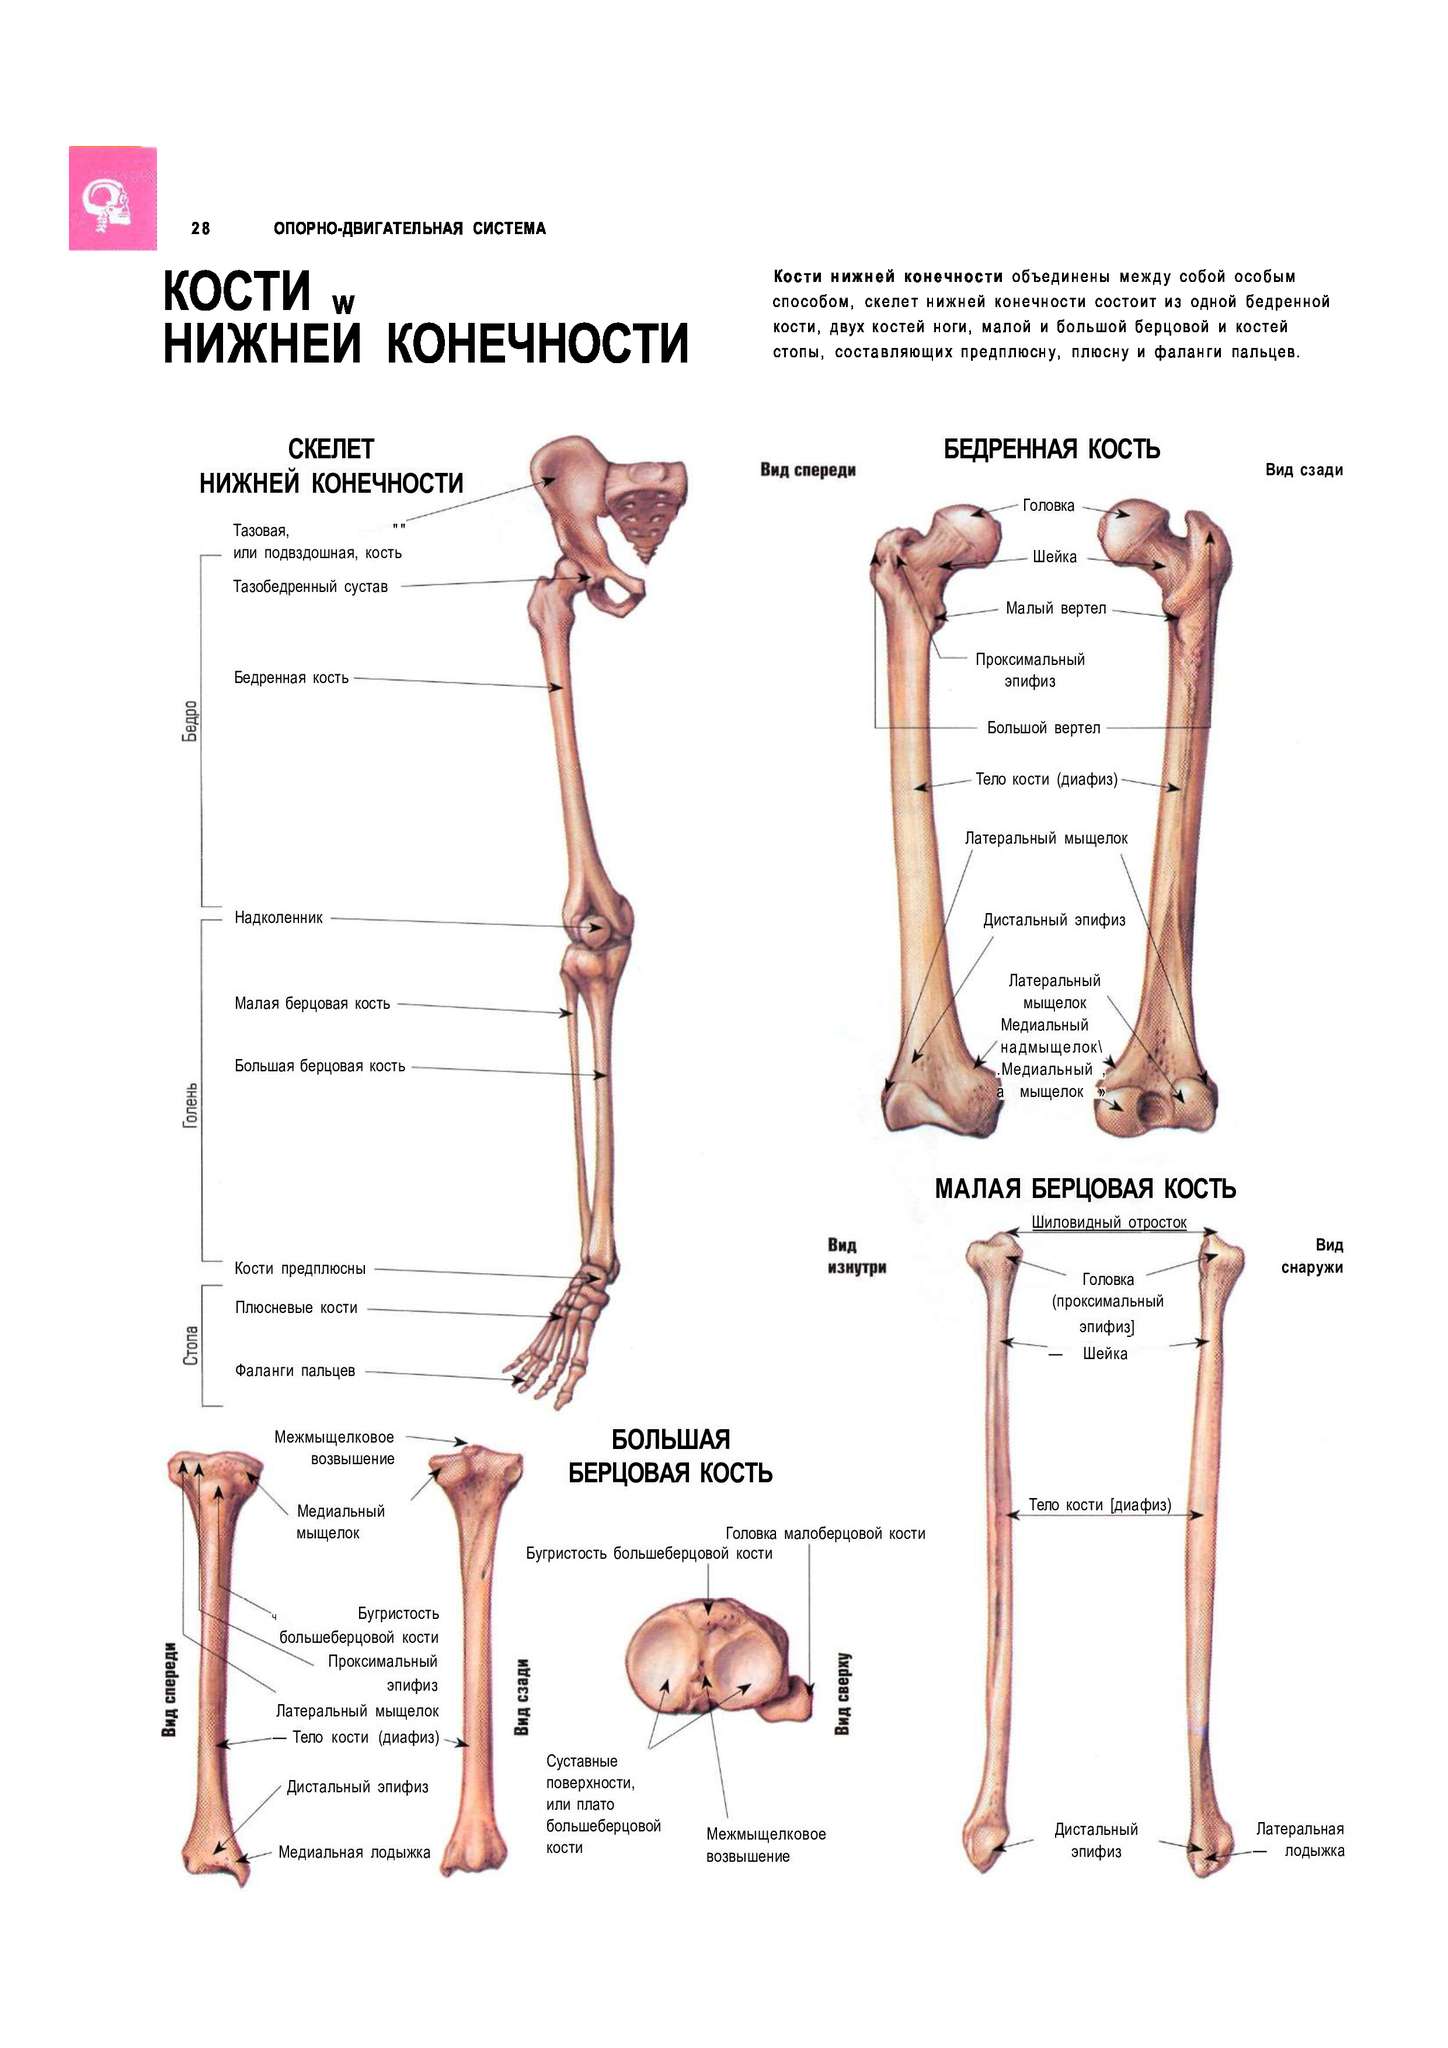 Кости нижних конечностей человека анатомия на латыни